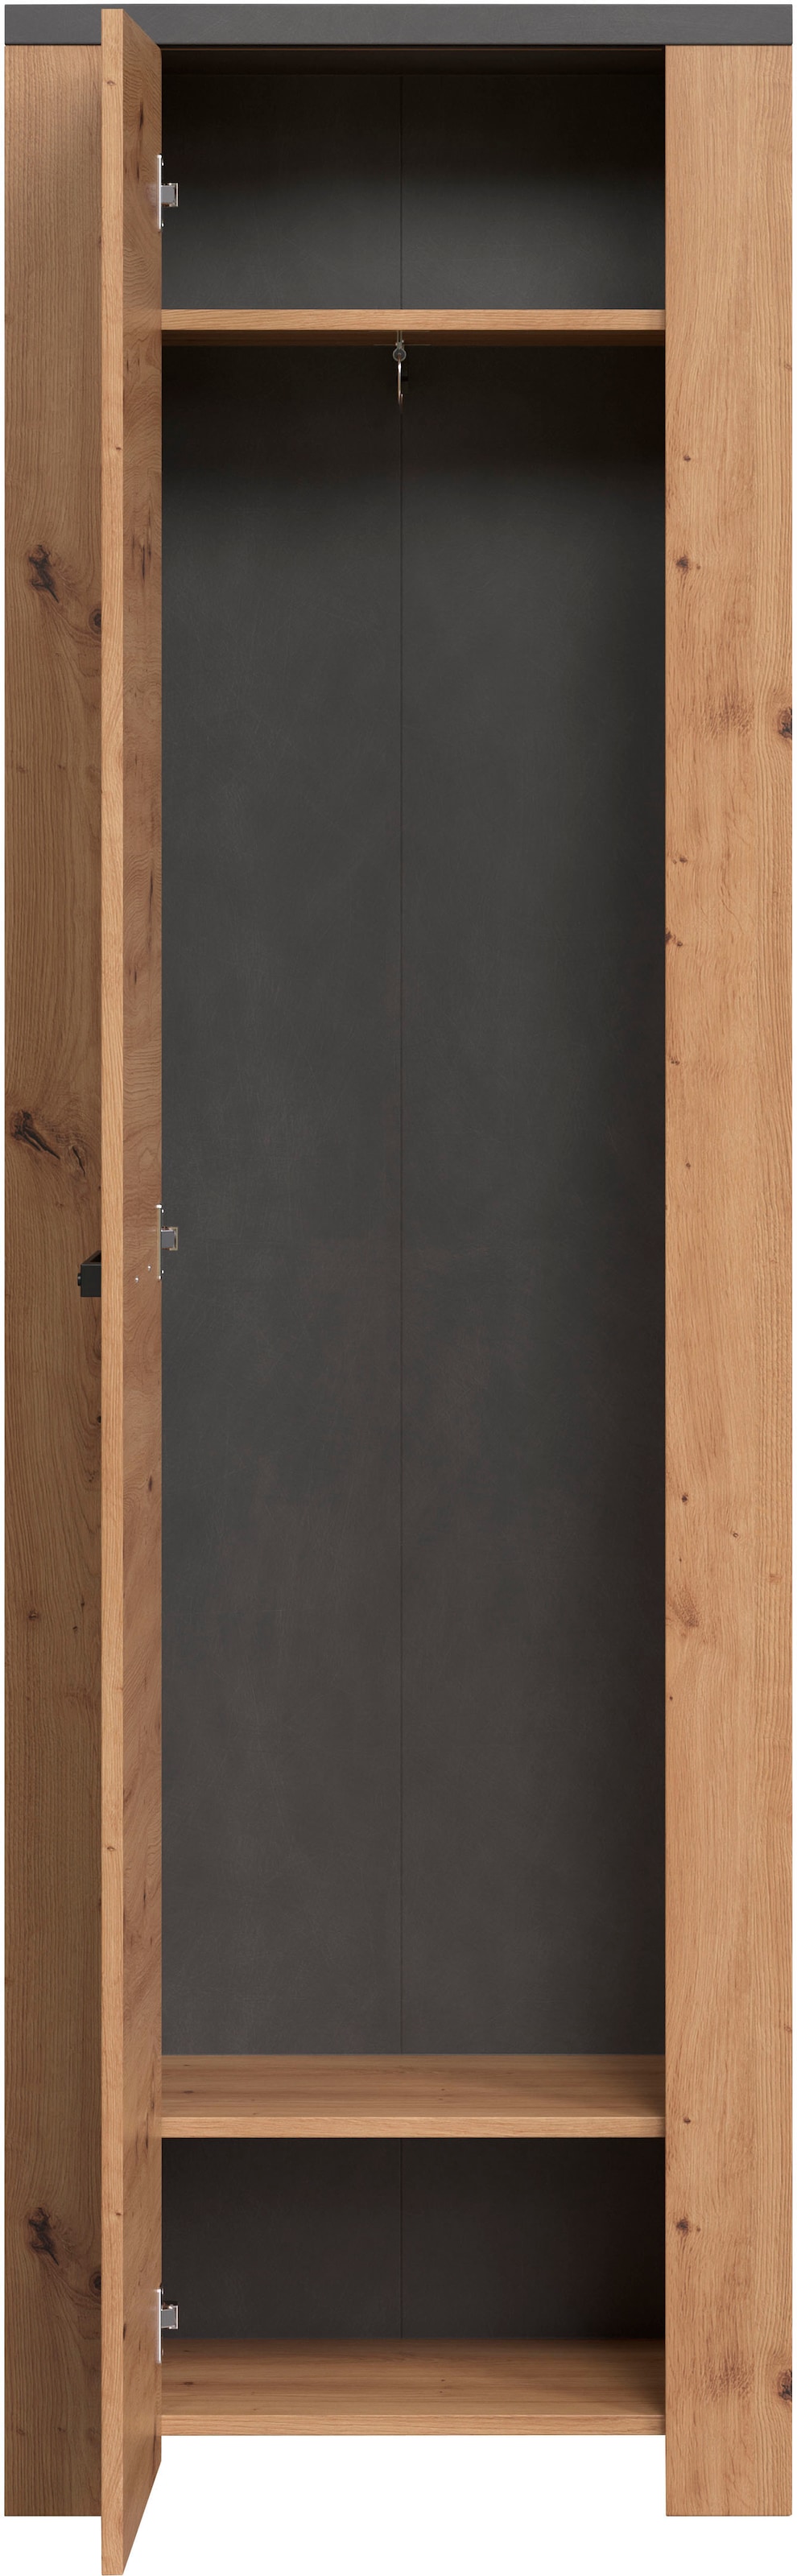 Home affaire Hochschrank »Ambres«, (1 St.), matte Echtholzoptik, ca. 62 cm breit, ausziehbare Kleiderstange